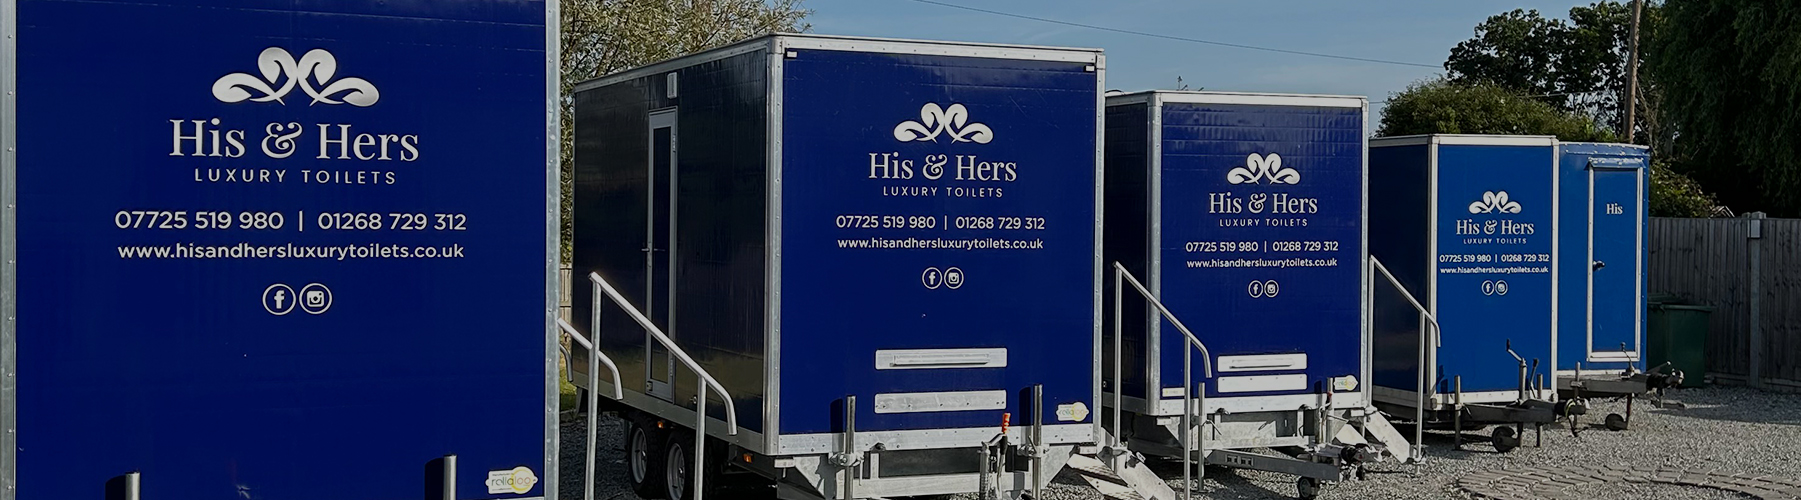 His & Hers Luxury Toilet Company